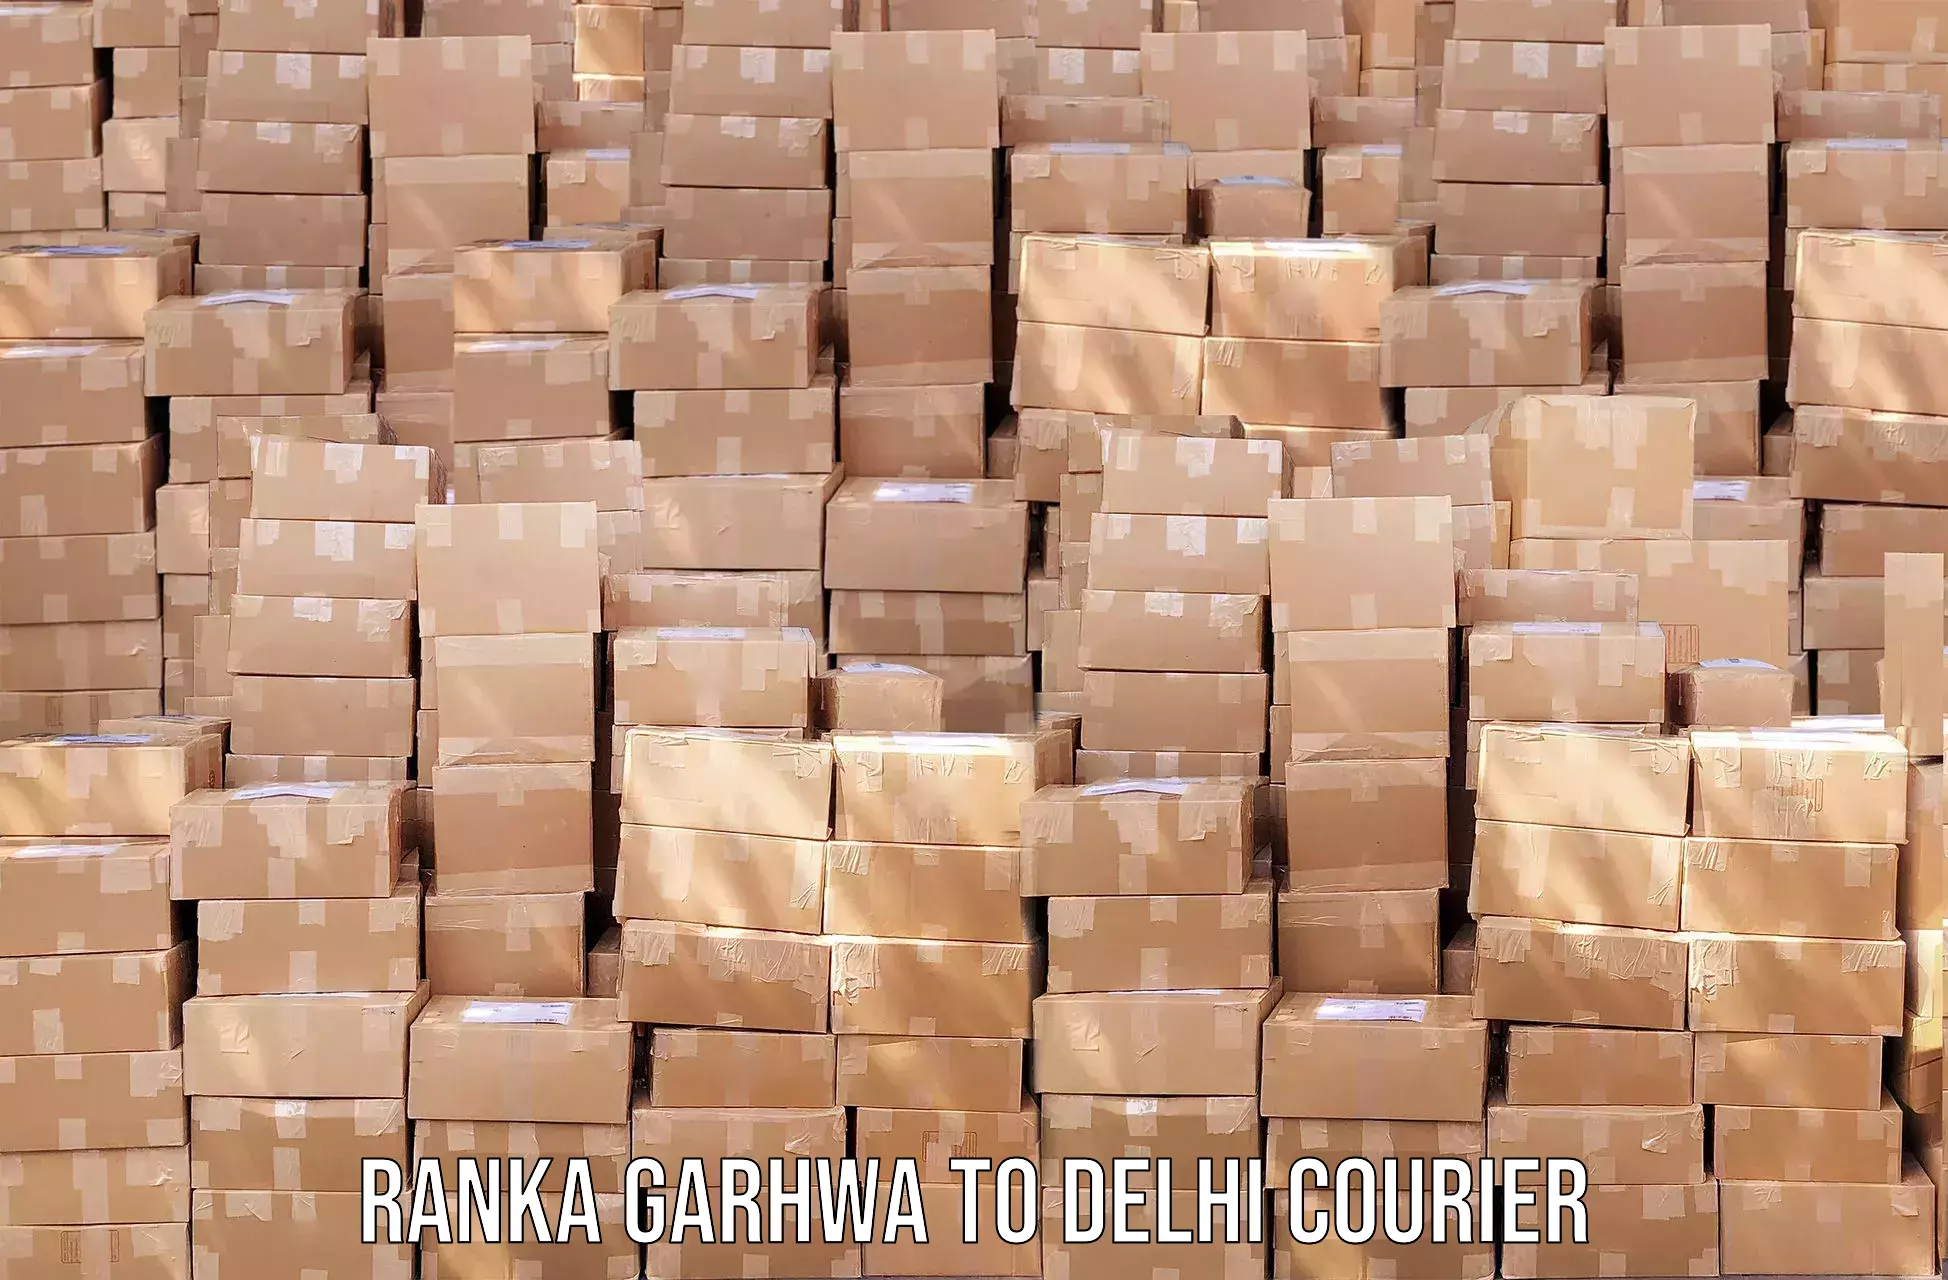 Local delivery service Ranka Garhwa to Delhi